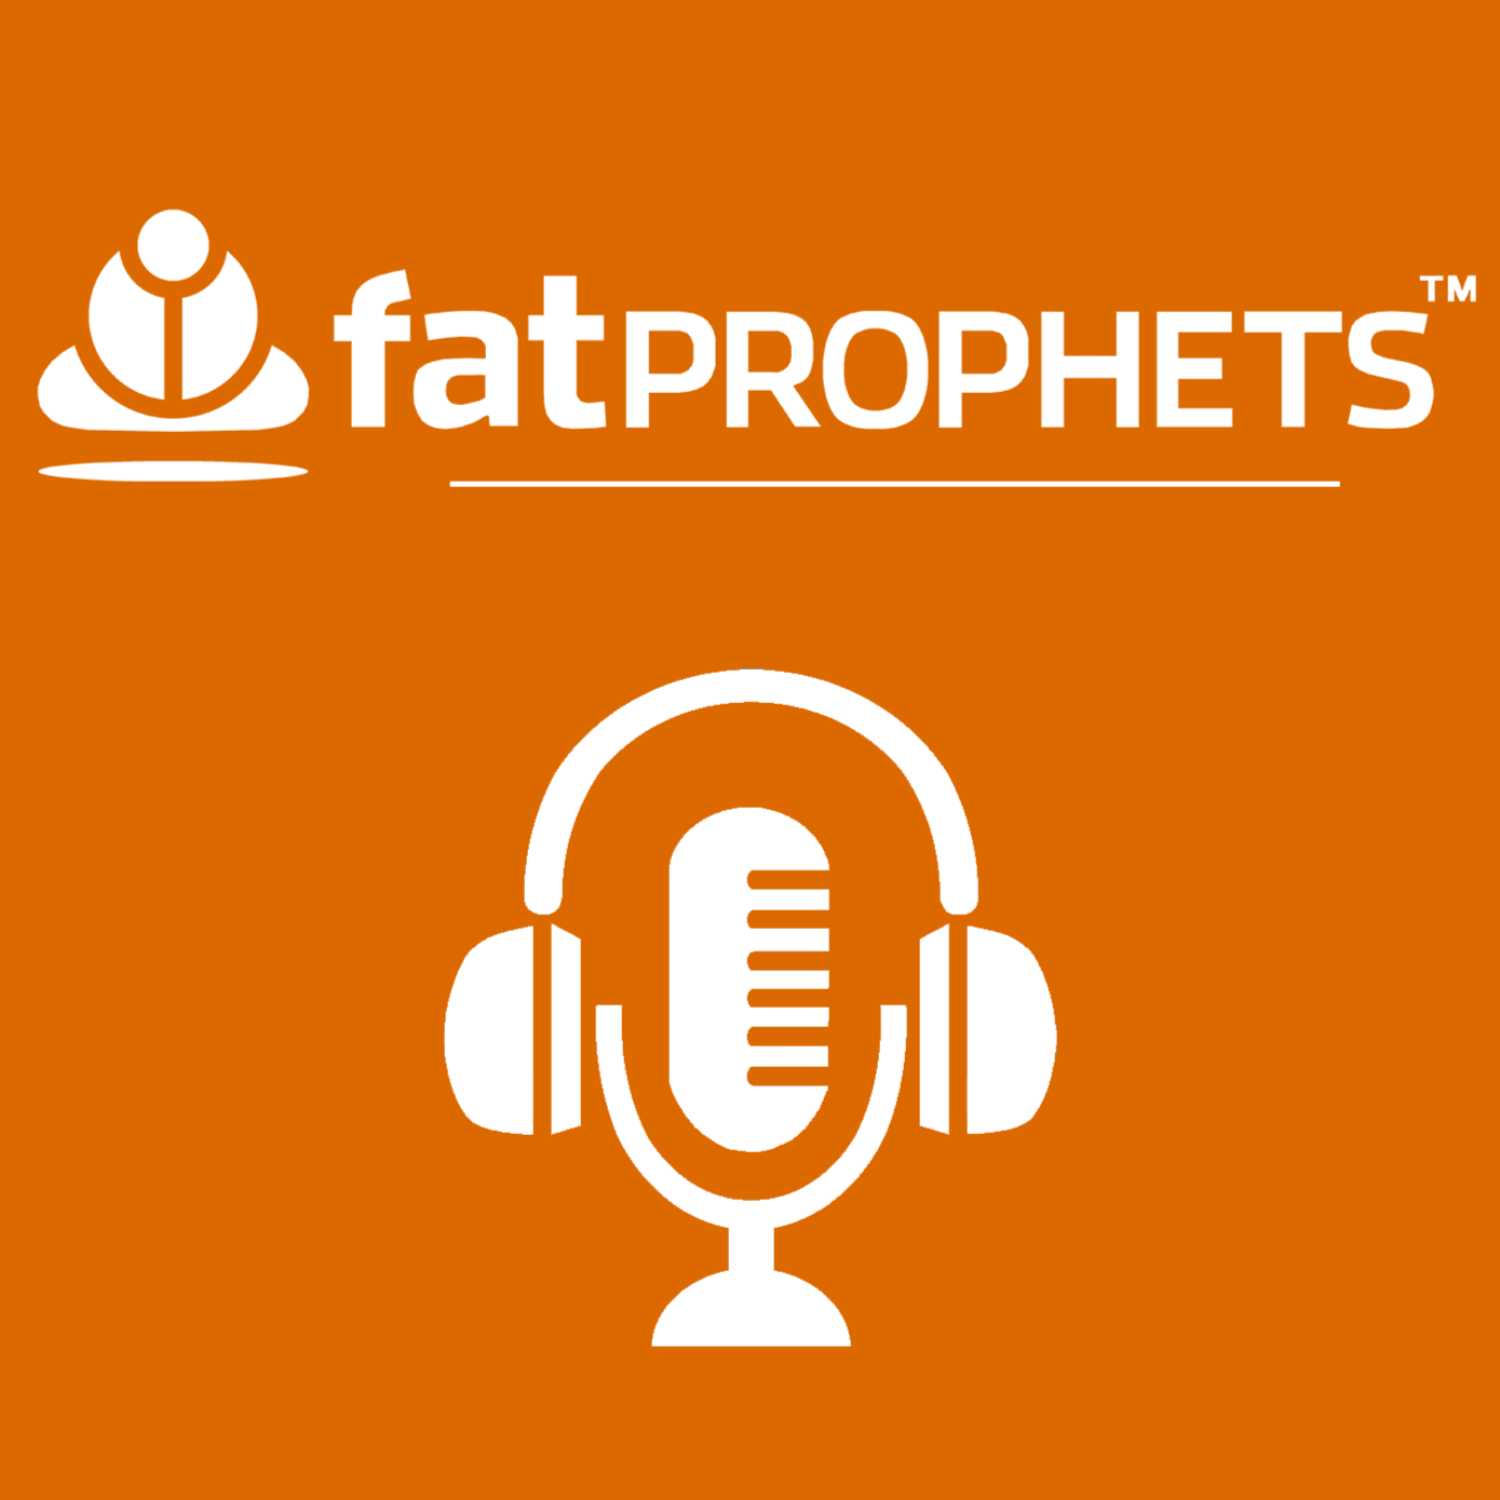 Fat Prophets